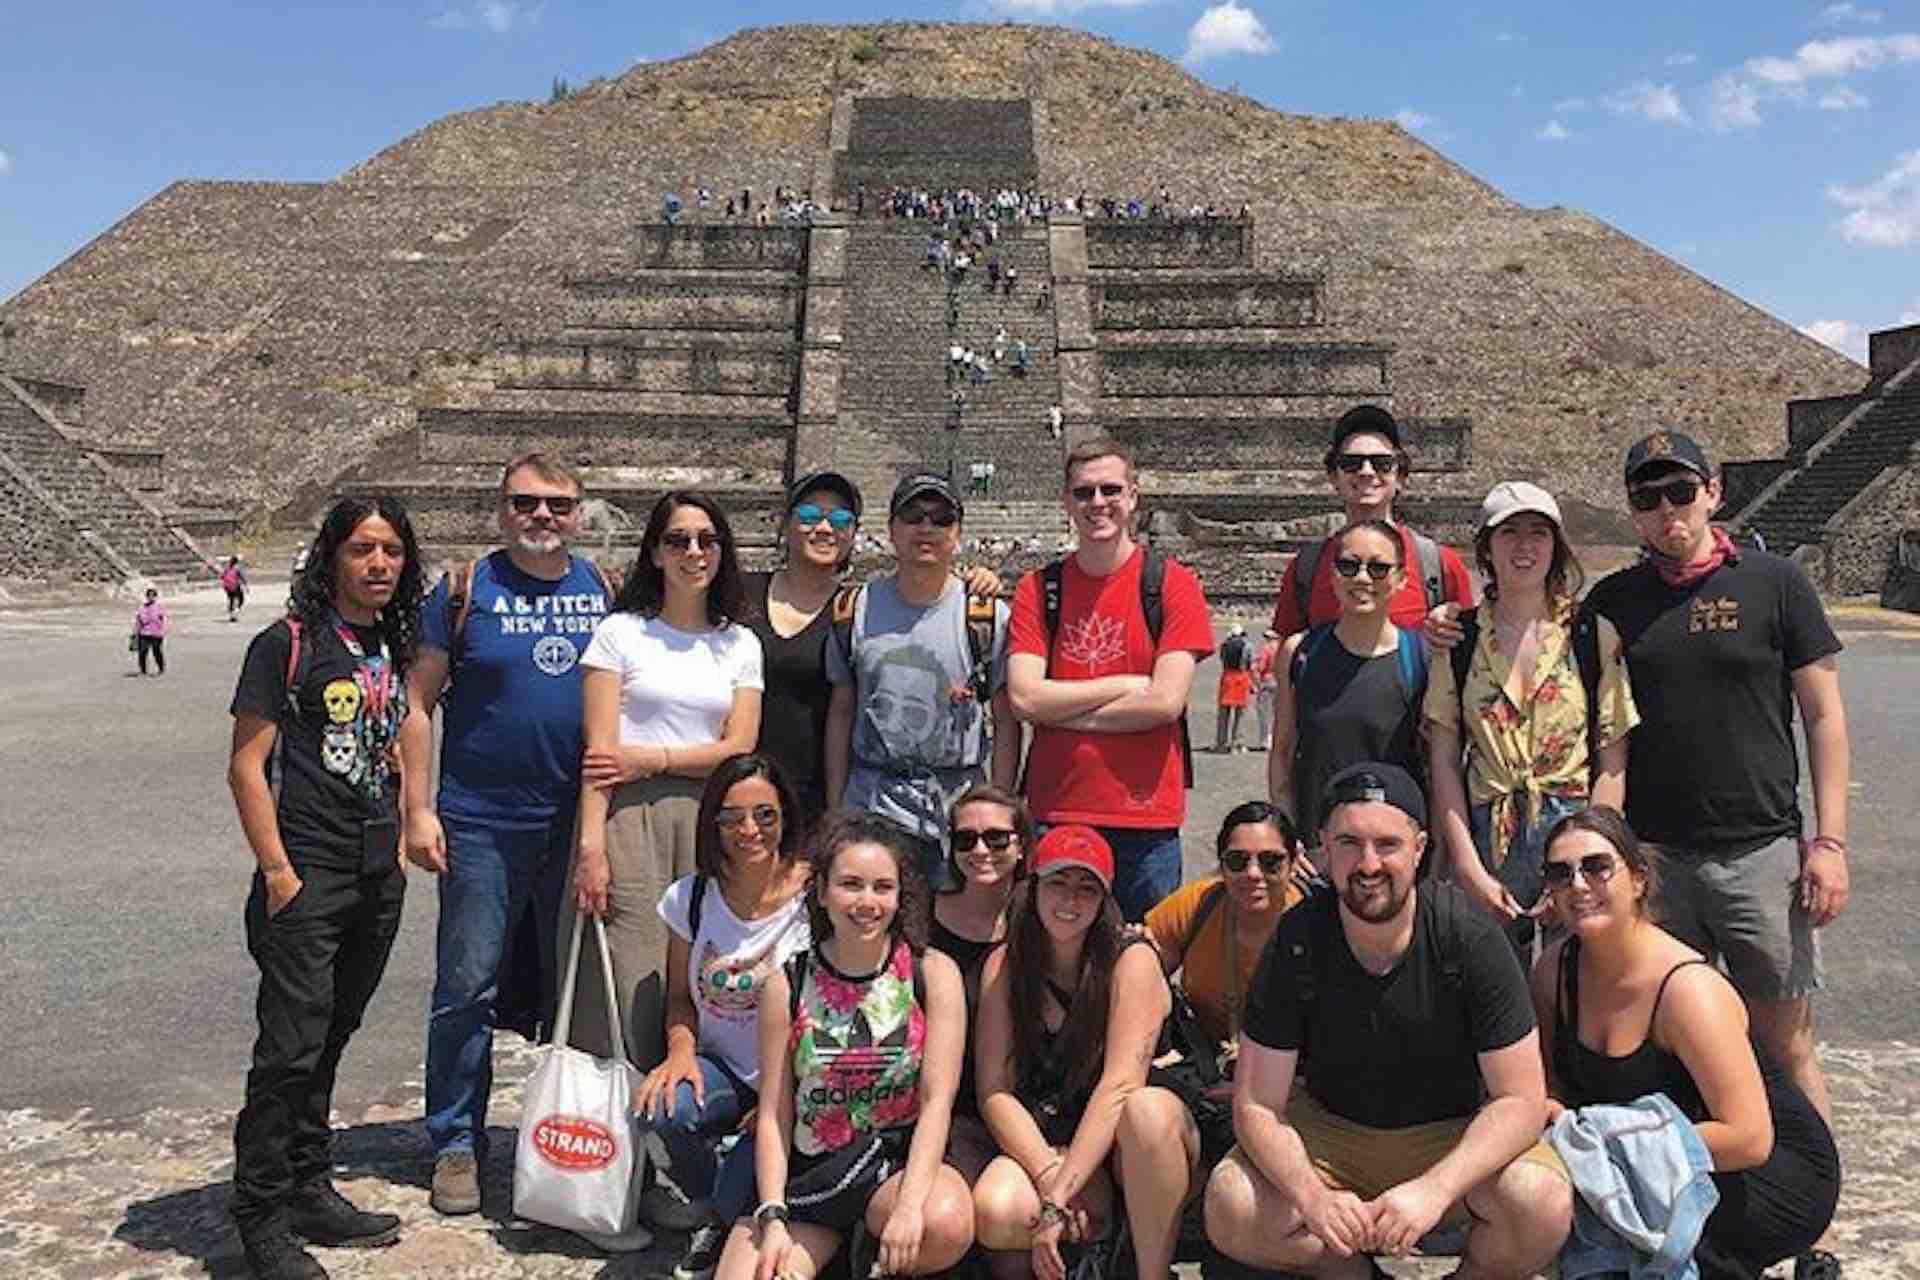 Foto de grupo de visitantes de las pirámides de Teotihuacán frente a la pirámide del Sol durante el recorrido